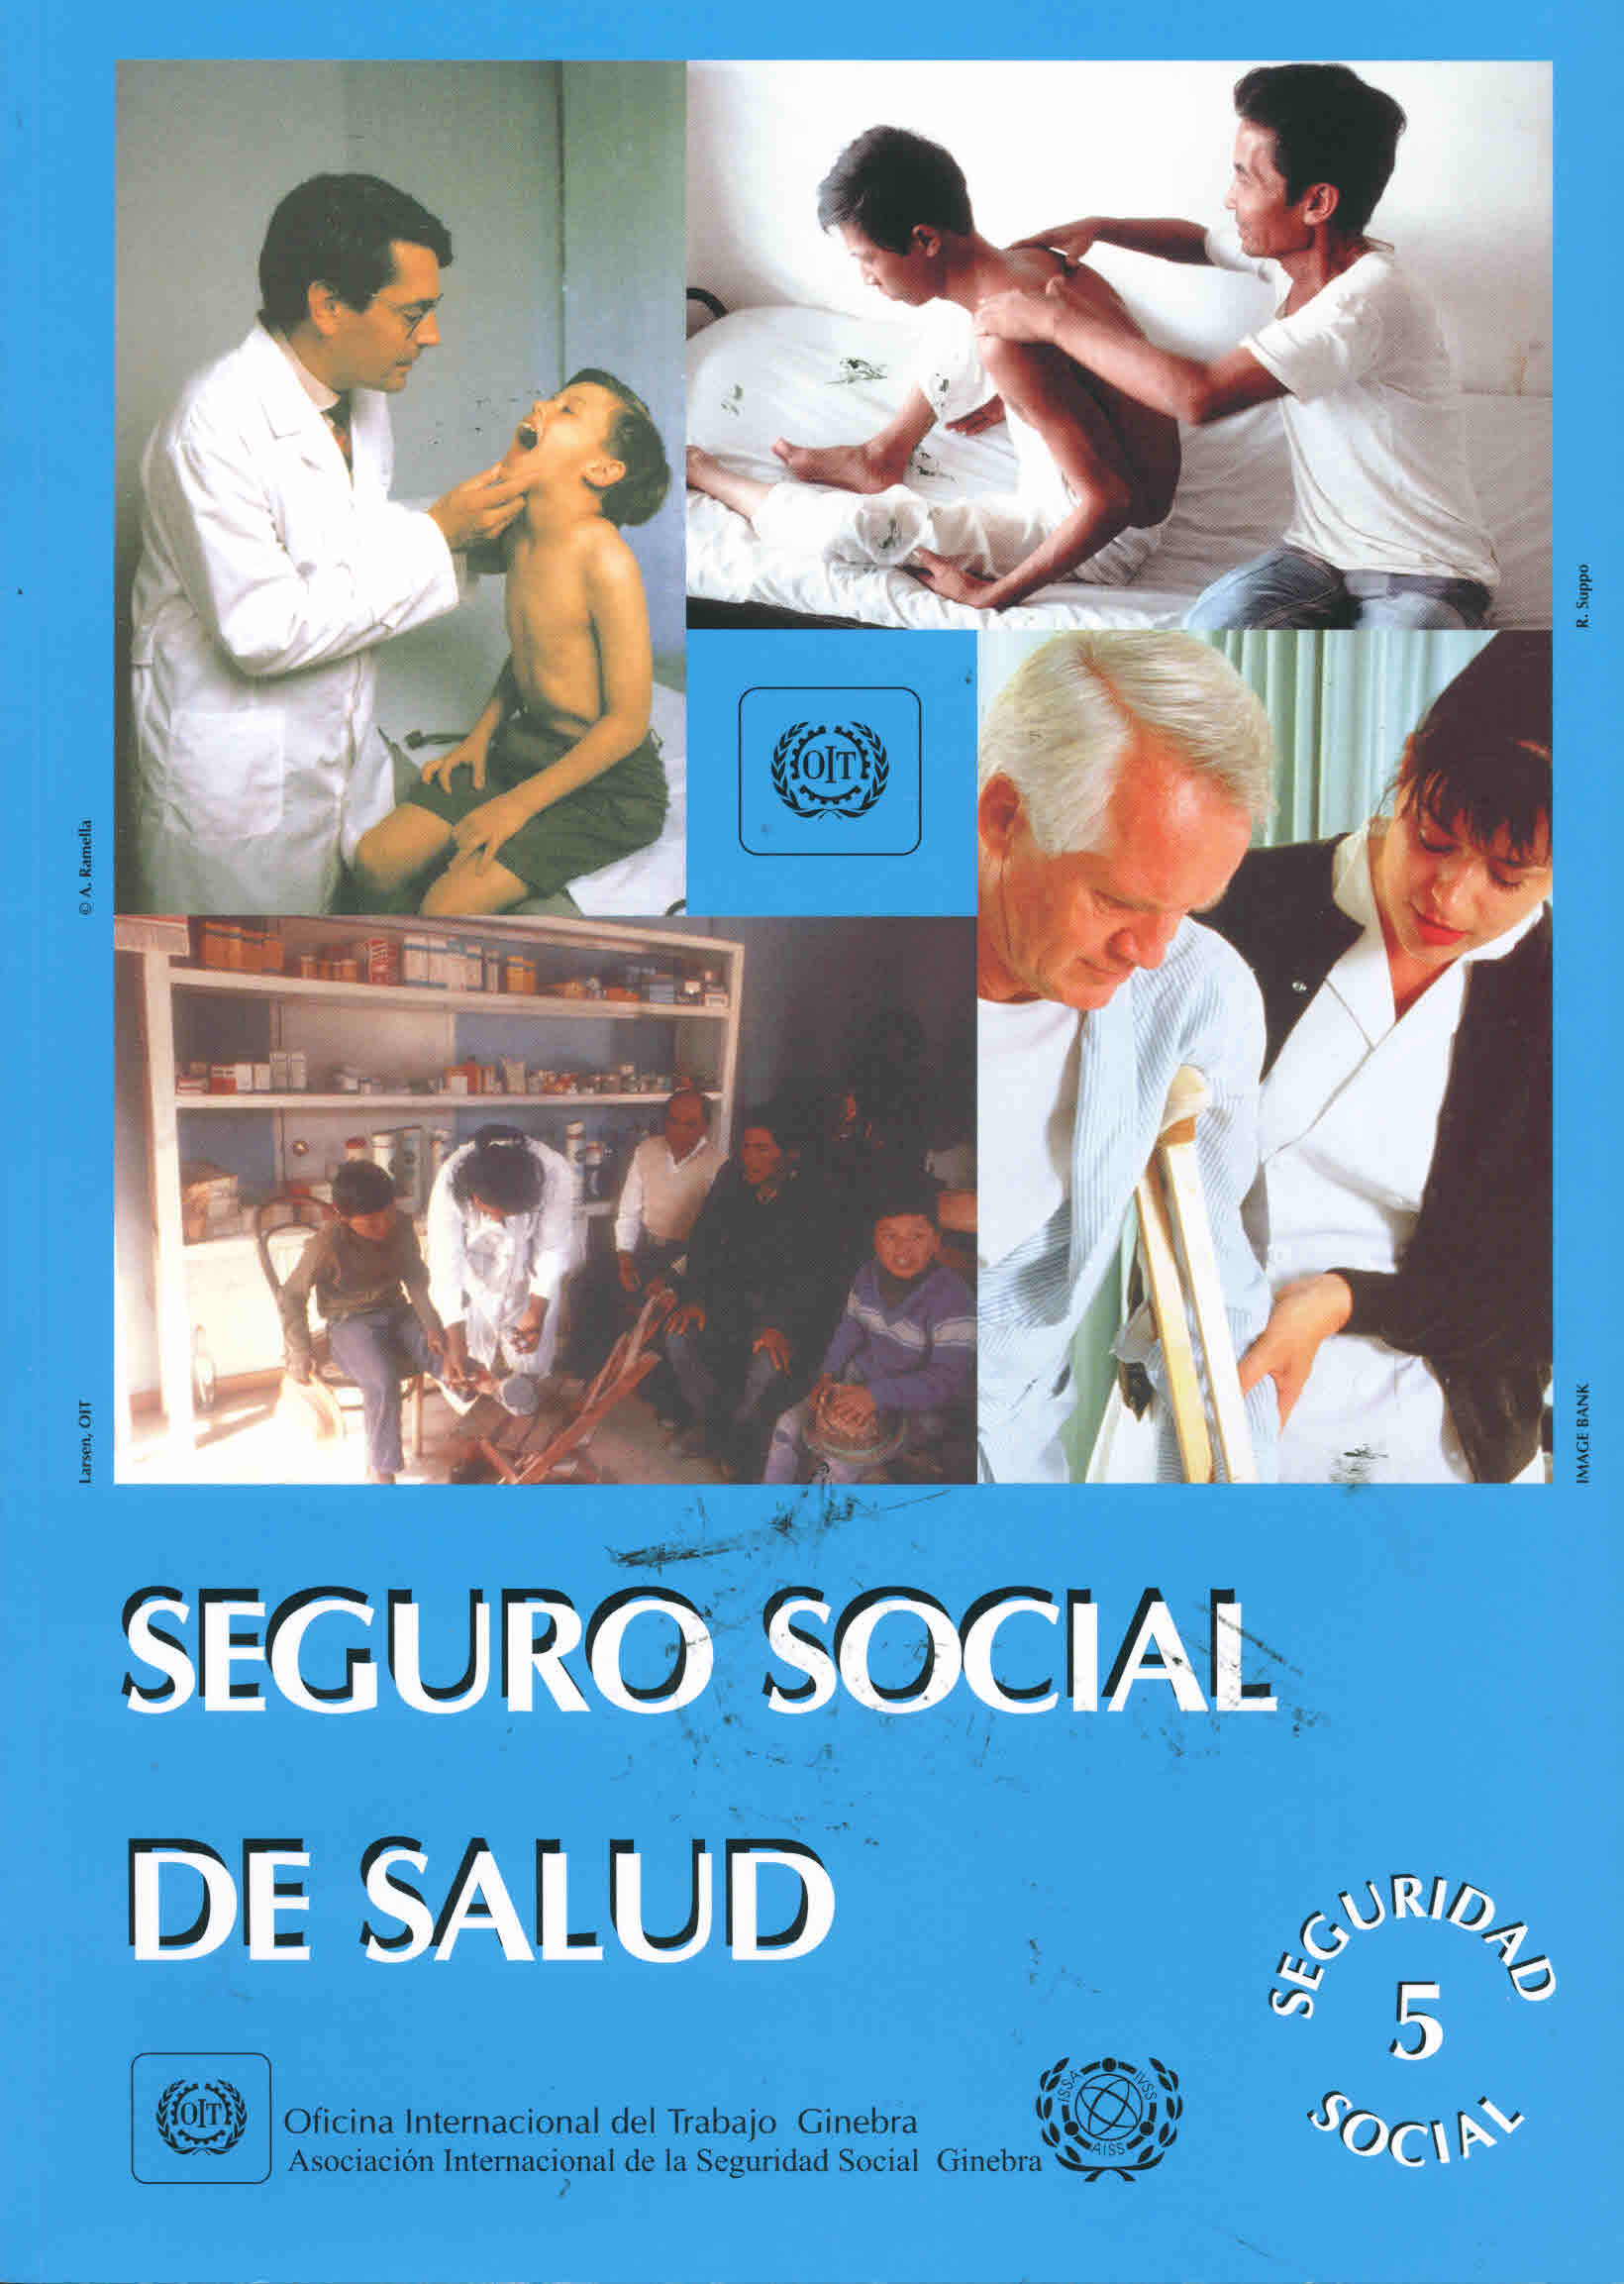 Seguro social de salud